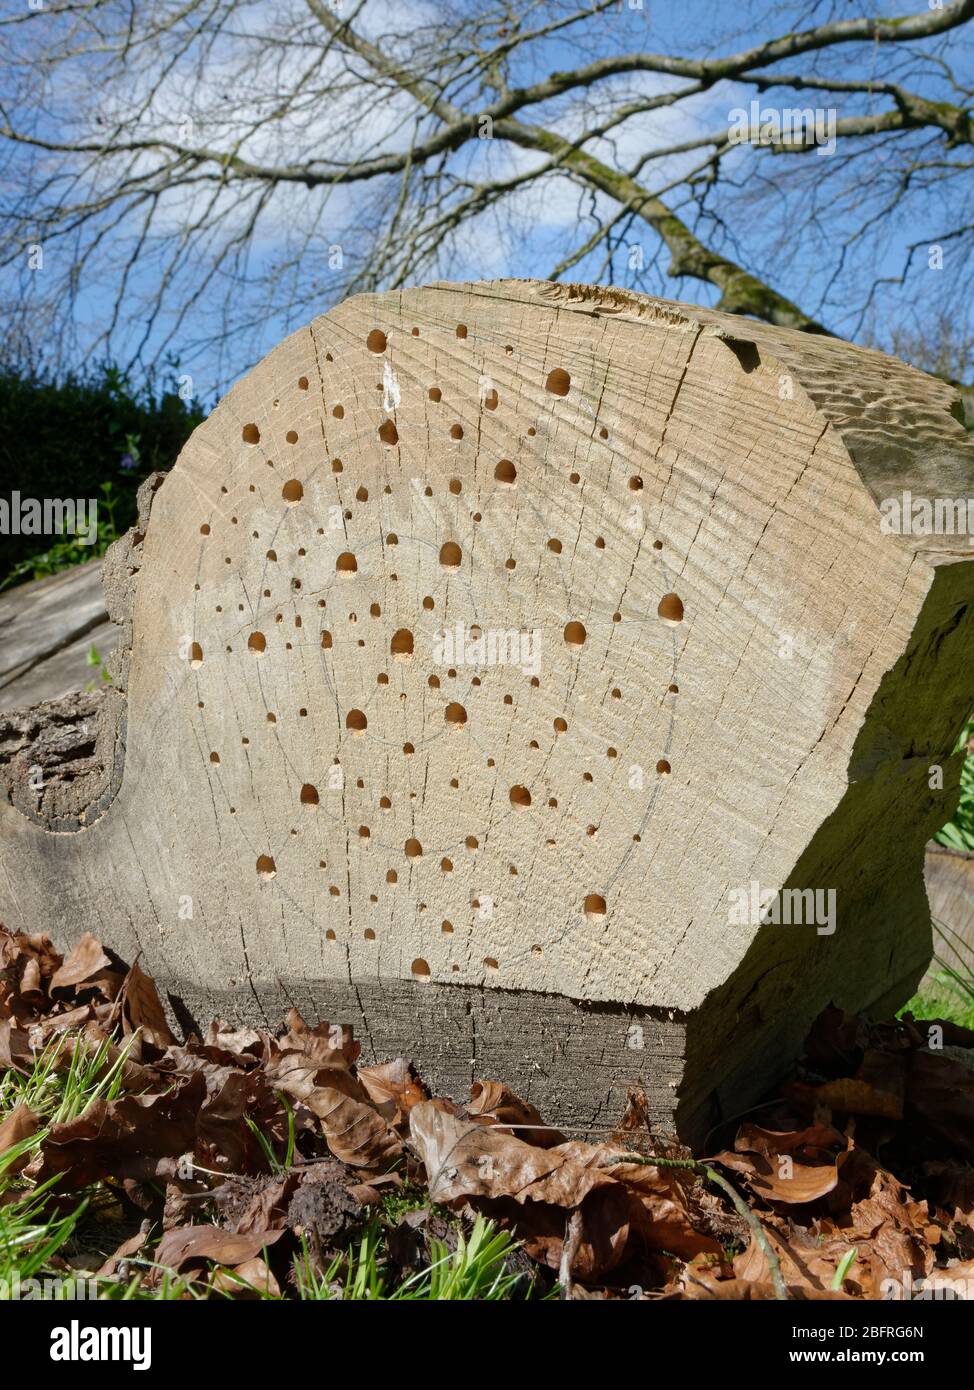 Insetto hotel creato da fori di varie dimensioni in un grande pezzo di legno, parte di un caduto, segn up Cedar albero, Wiltshire giardino, Regno Unito, aprile. Foto Stock